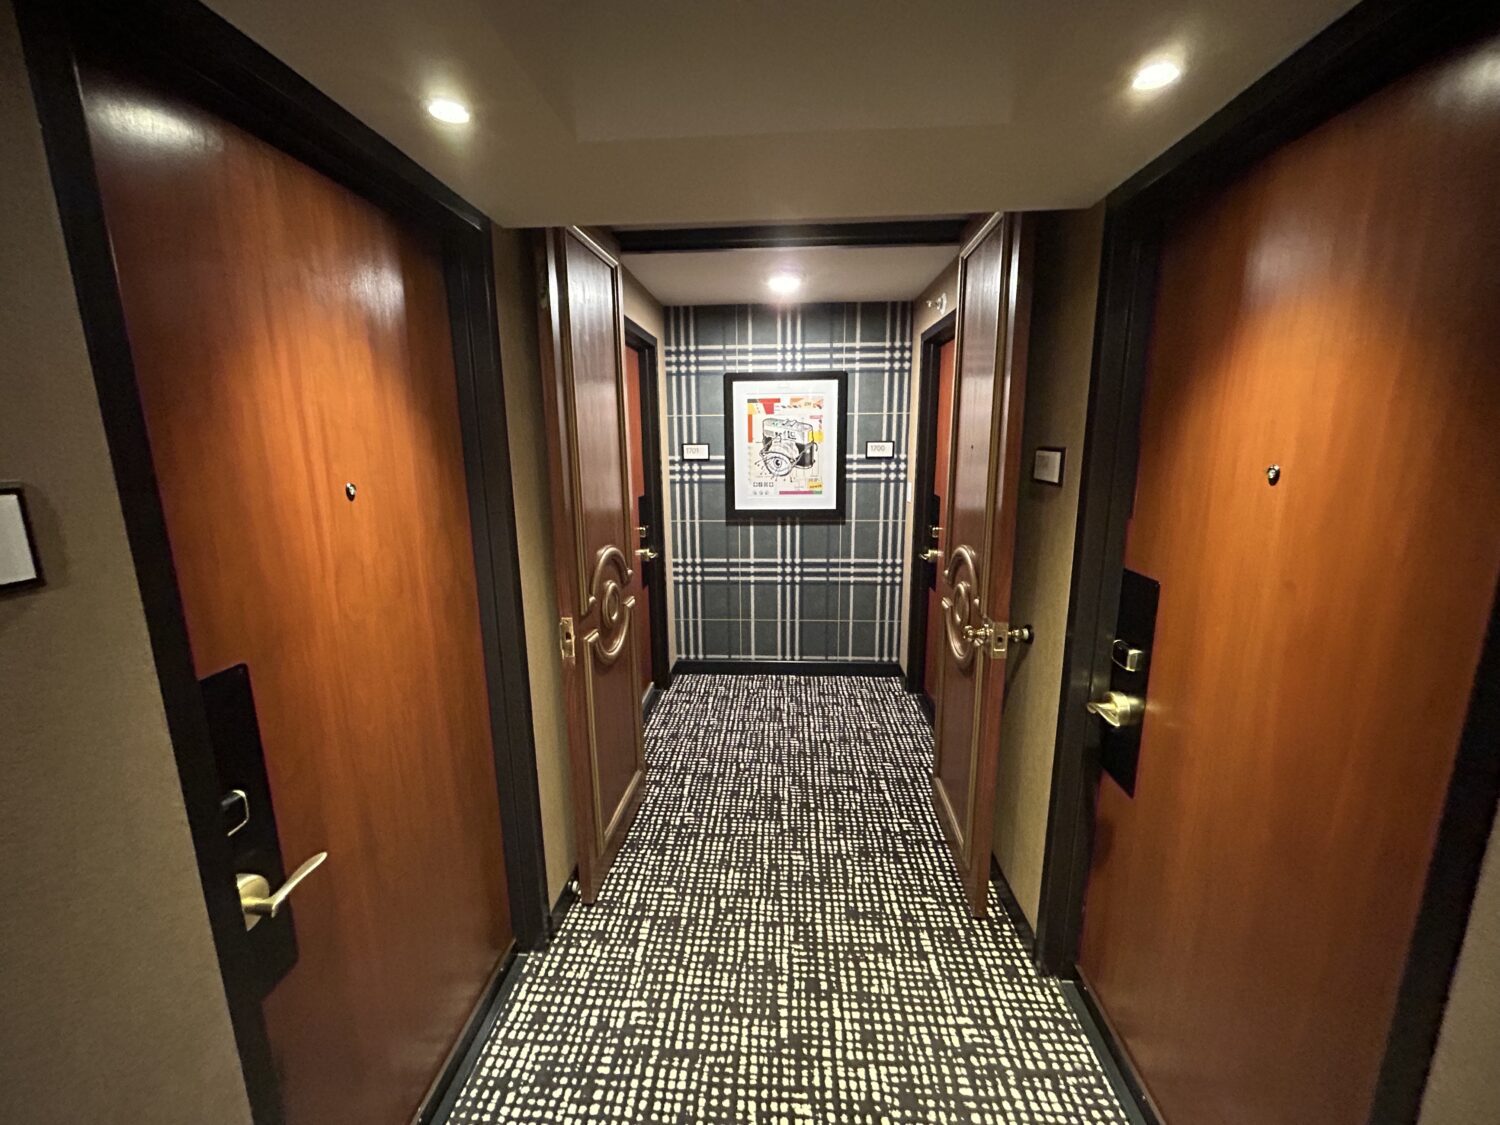 Hallways of Hotel Indigo